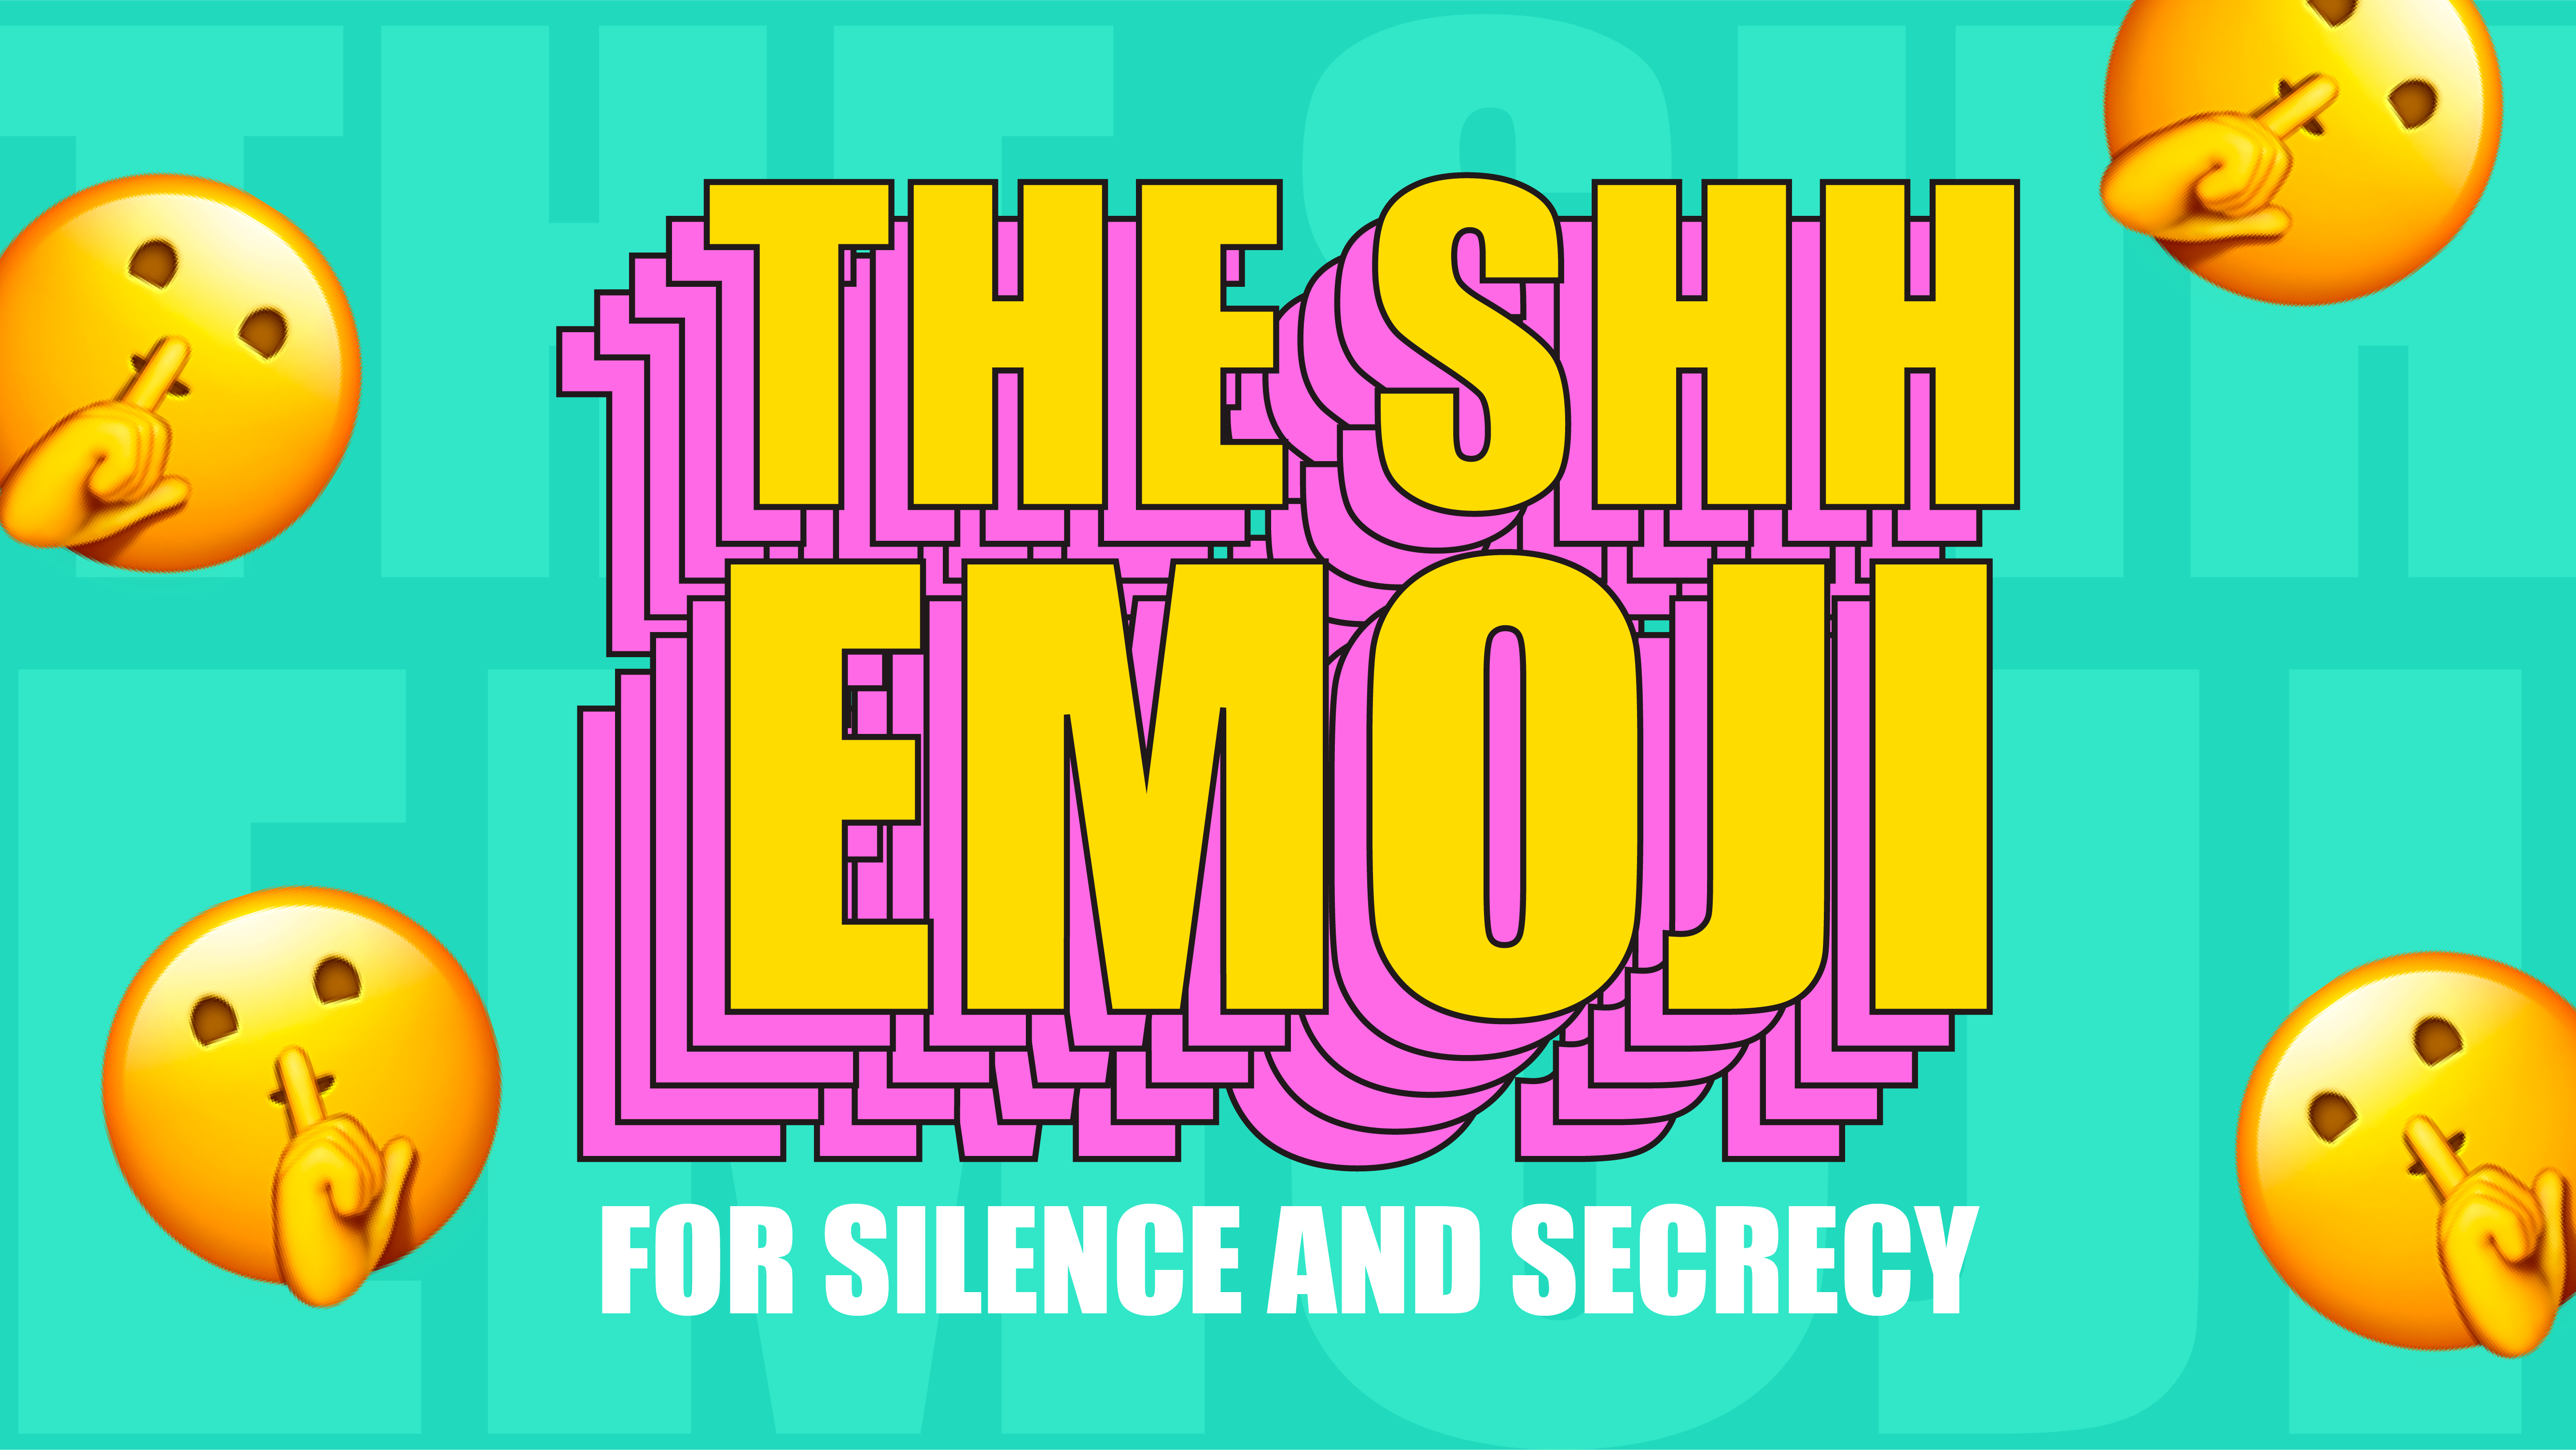 😳 Flushed Face emoji Meaning